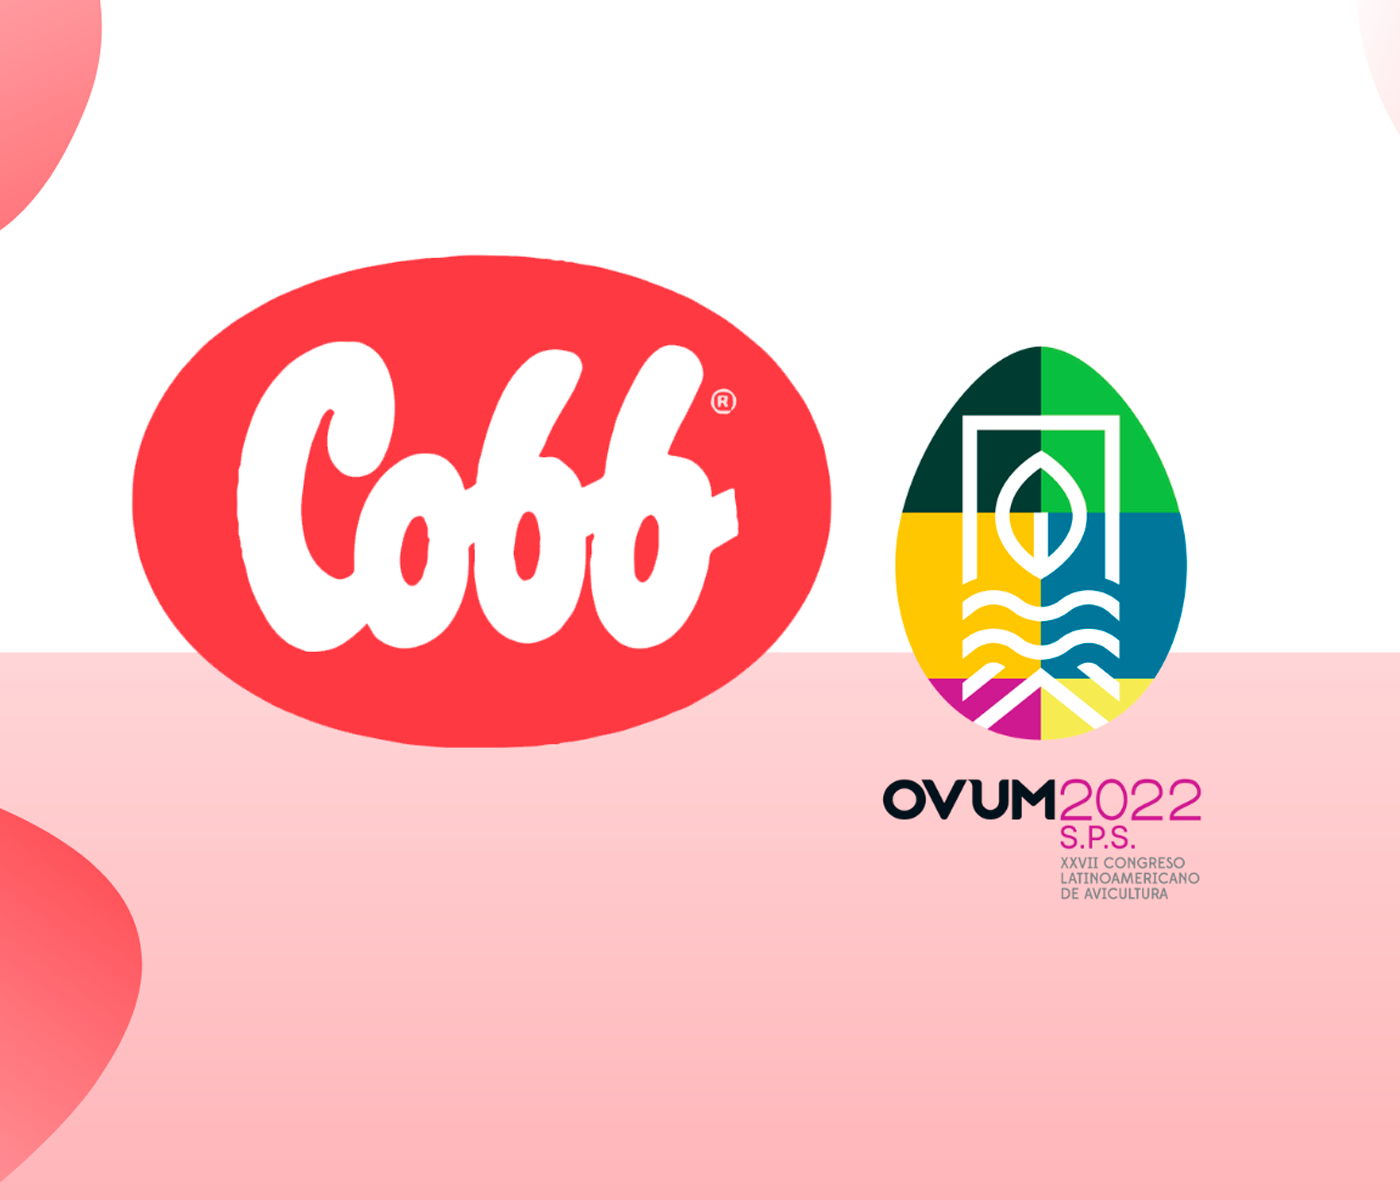 Cobb – Vantress participará en el OVUM 2022